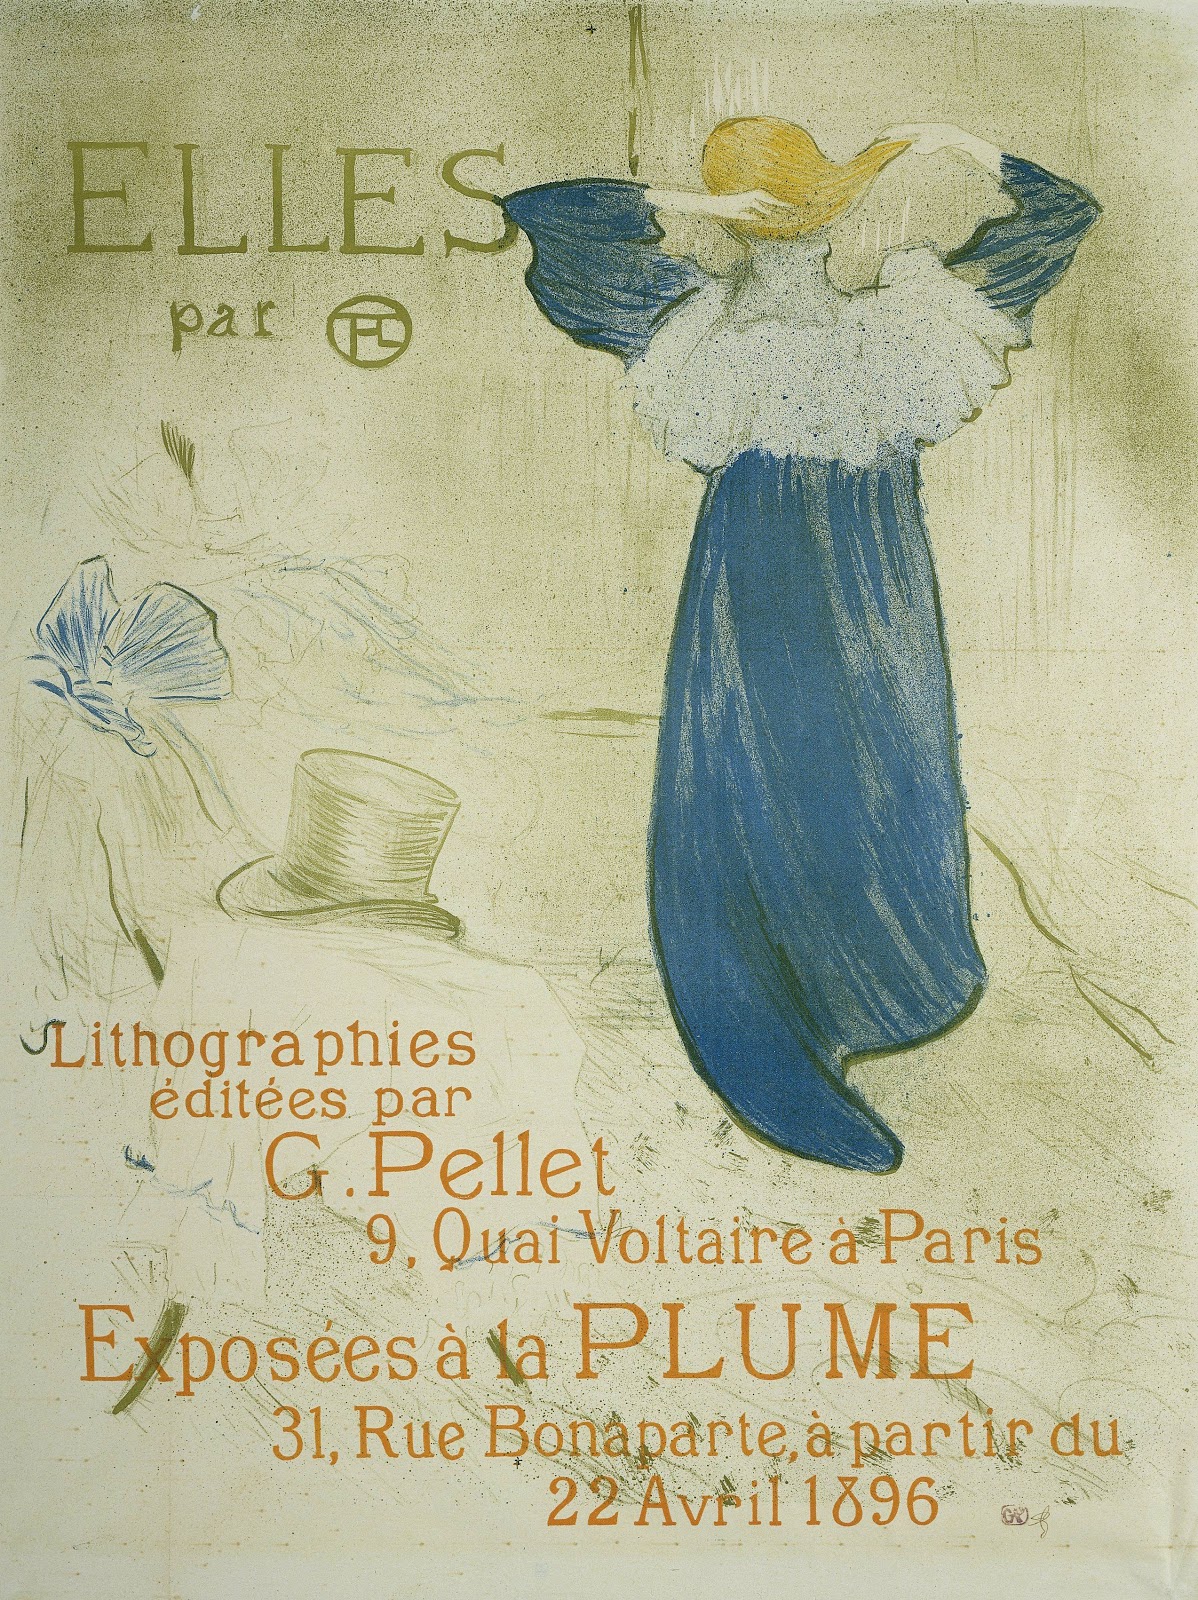 Henri+de+Toulouse+Lautrec-1864-1901 (48).jpg